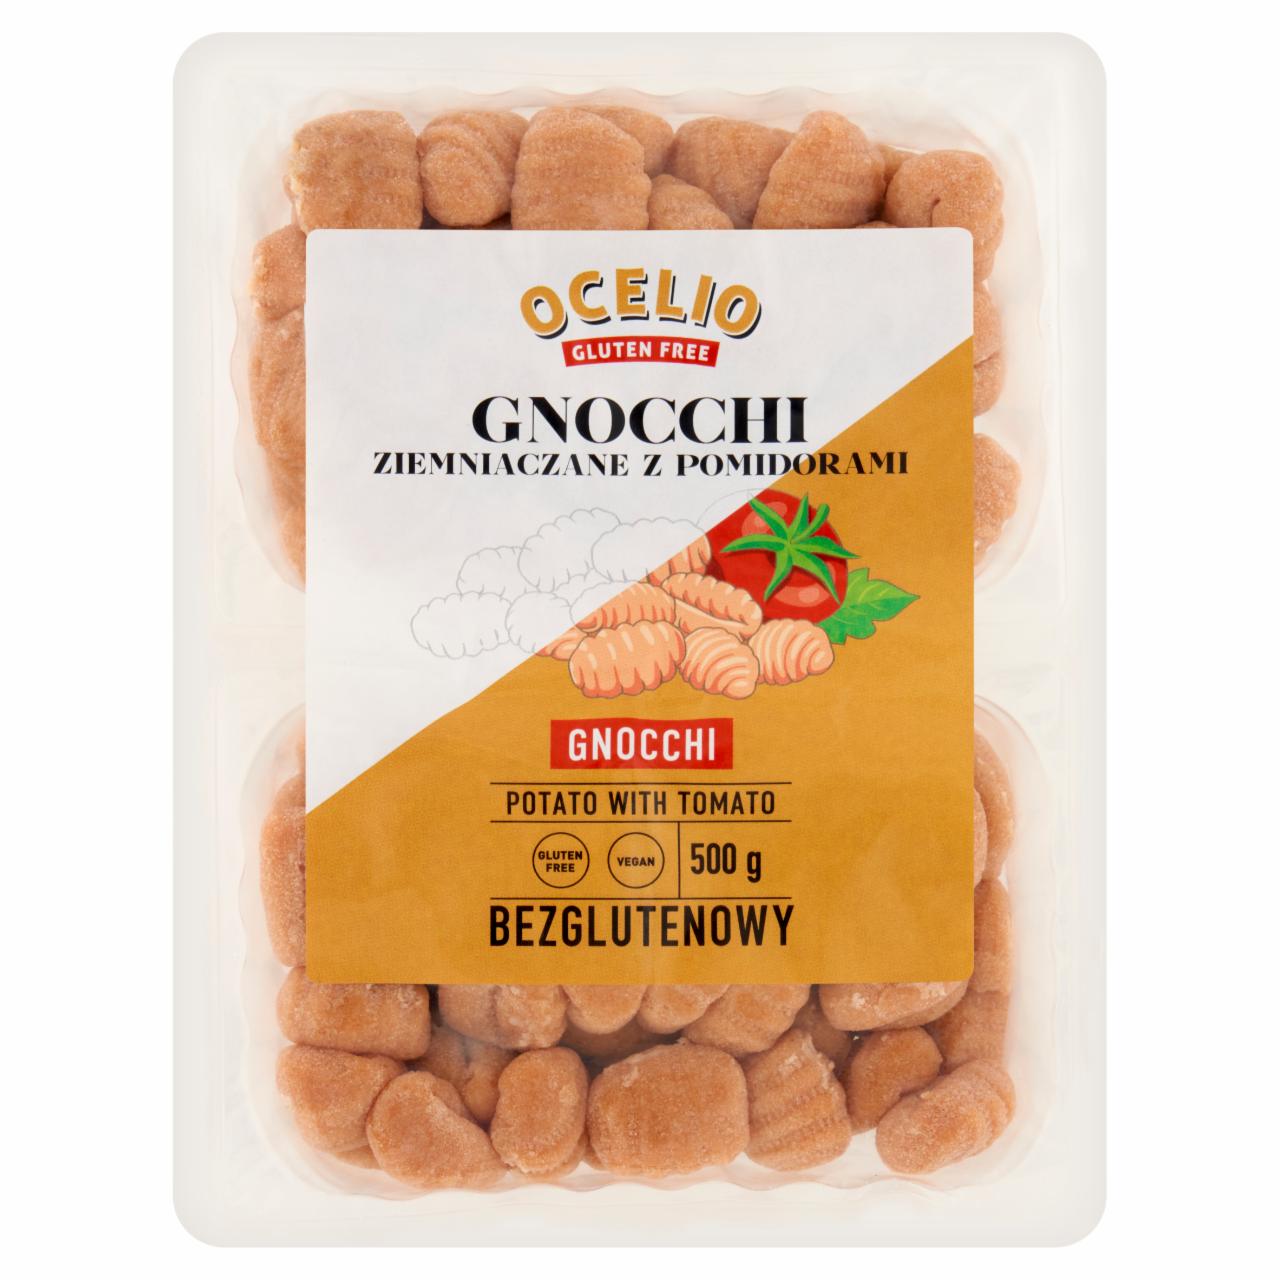 Zdjęcia - Ocelio Gnocchi ziemniaczane z pomidorami 500 g